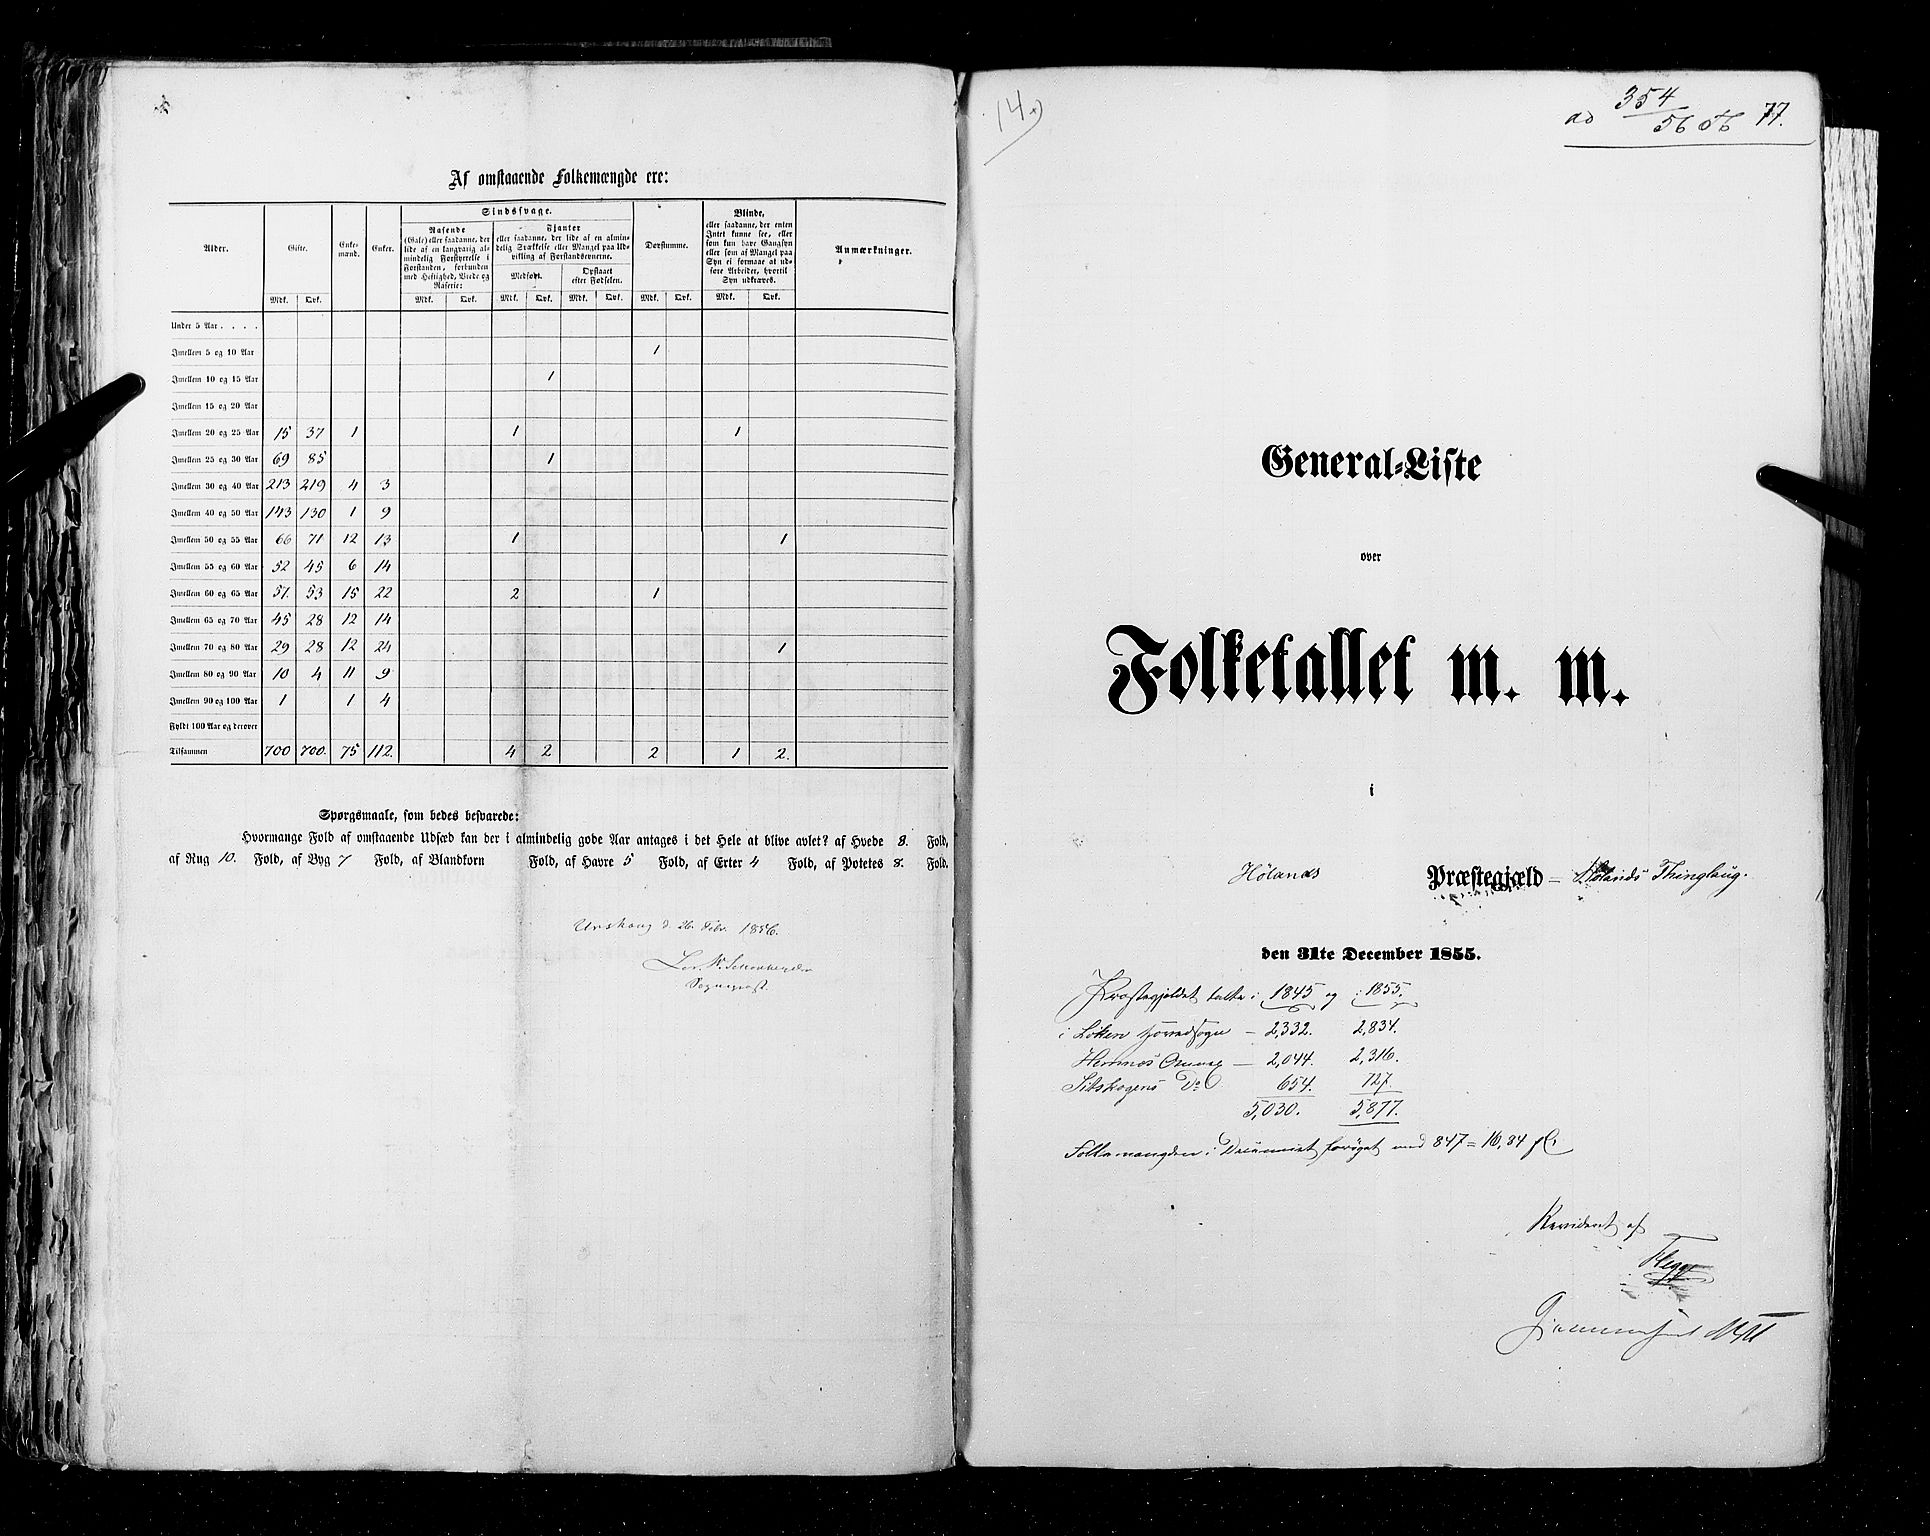 RA, Census 1855, vol. 1: Akershus amt, Smålenenes amt og Hedemarken amt, 1855, p. 77